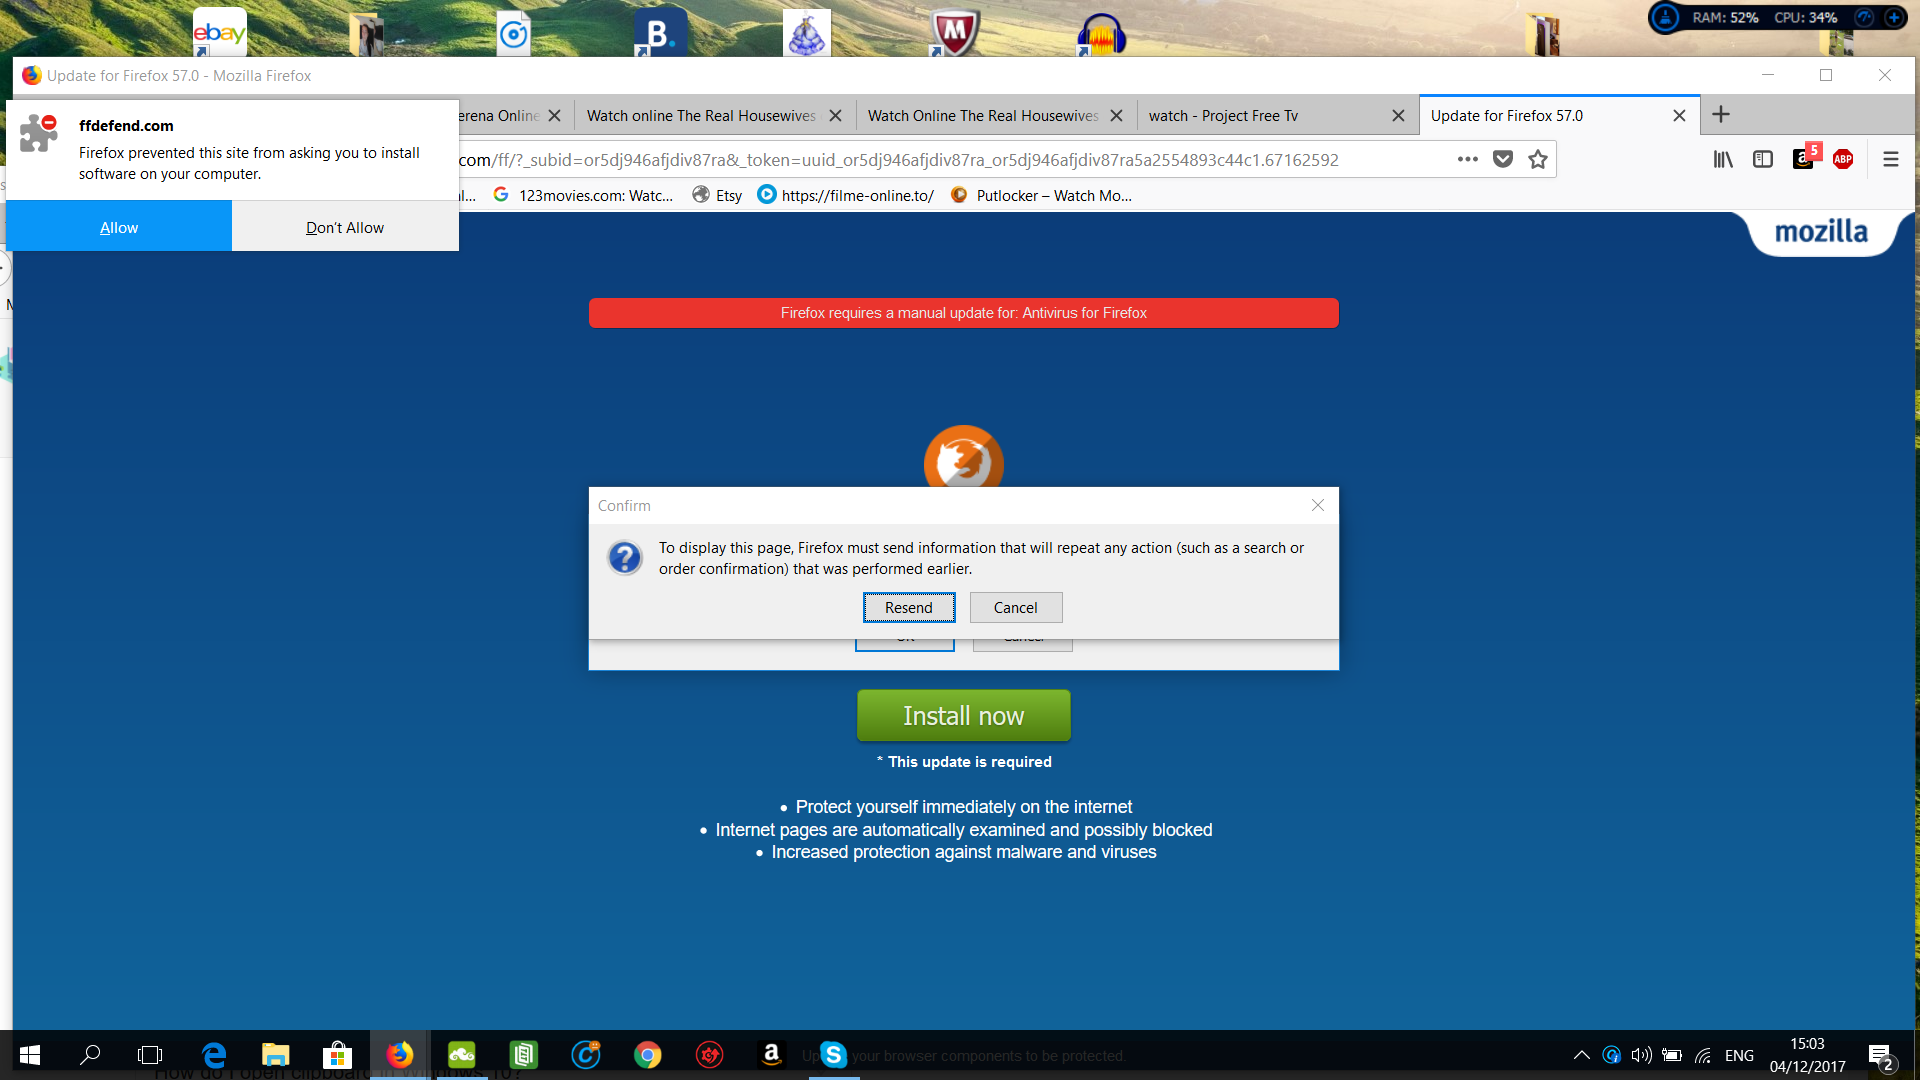 ¿Cómo reviso mi Firefox en busca de malware?